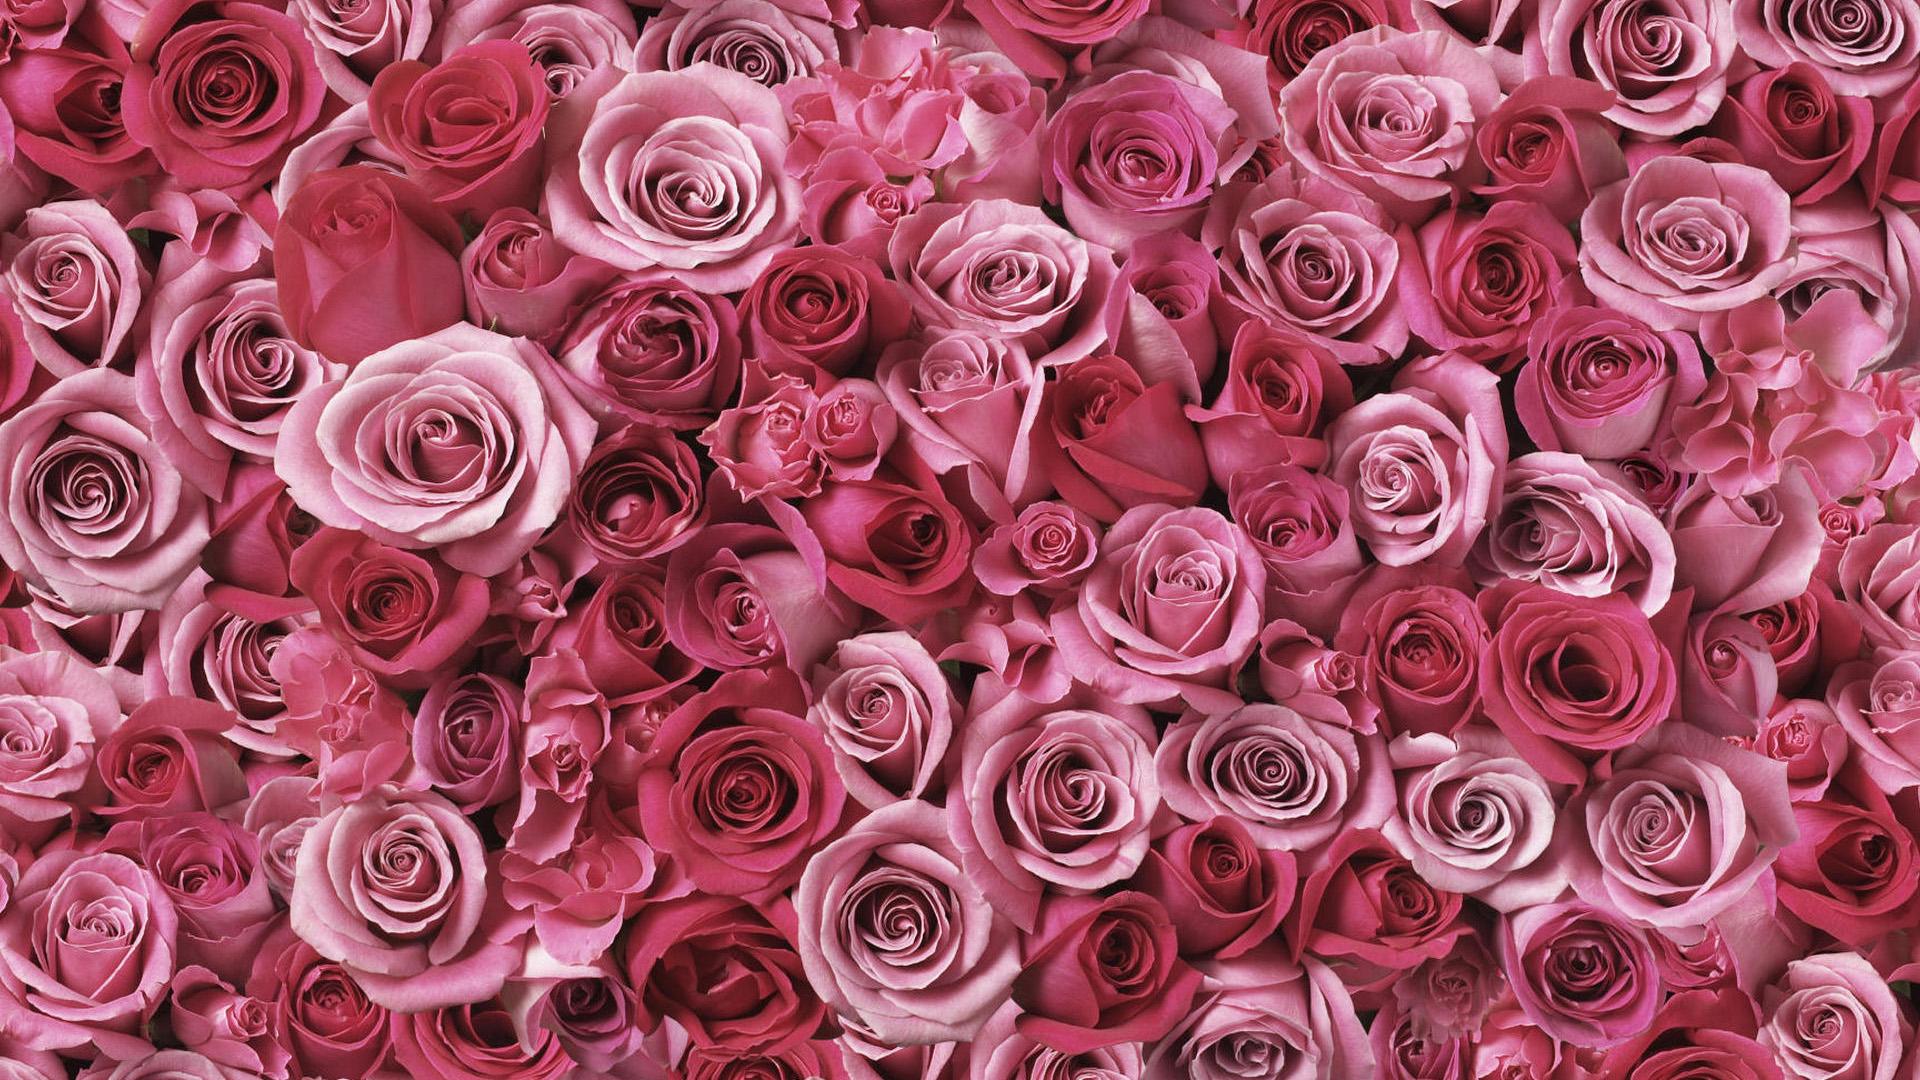 Rose Art Pink Flowers Wallpaper Flowers High Resolution